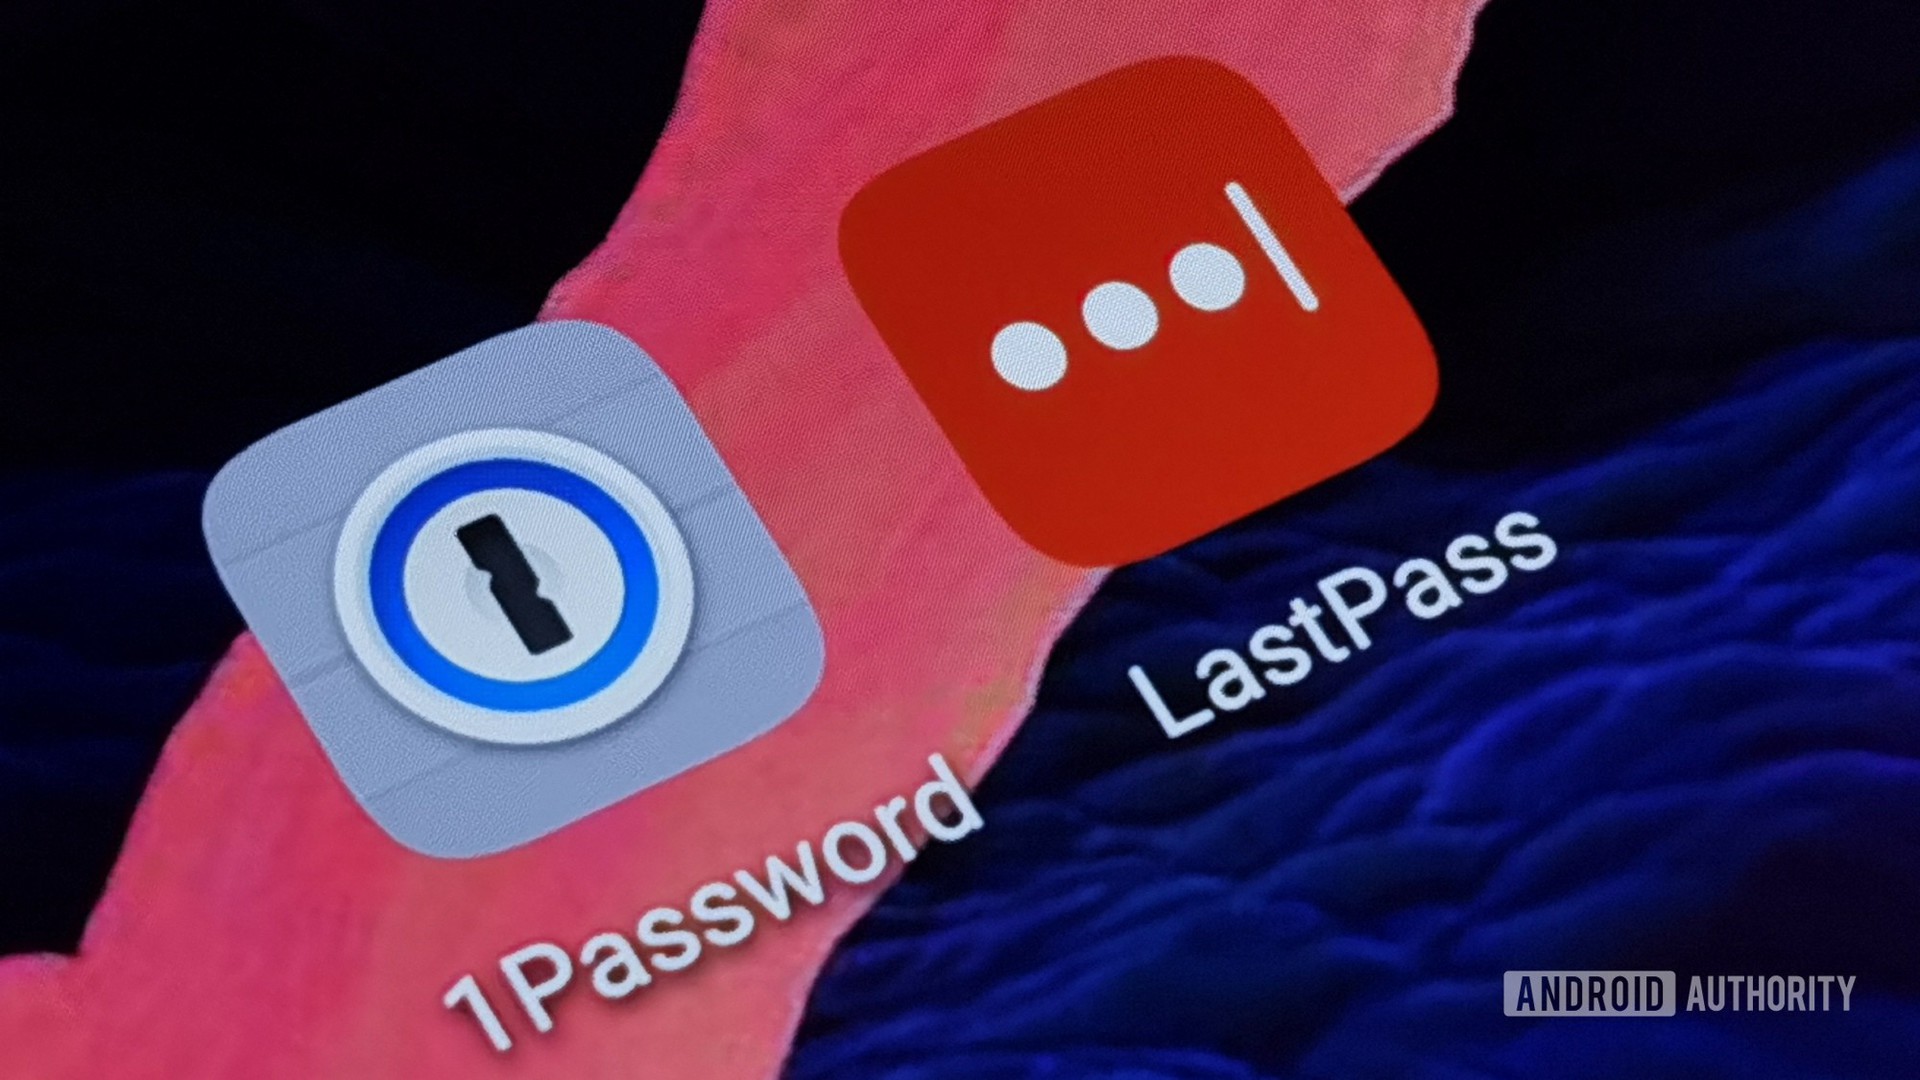 1password vs lastpass